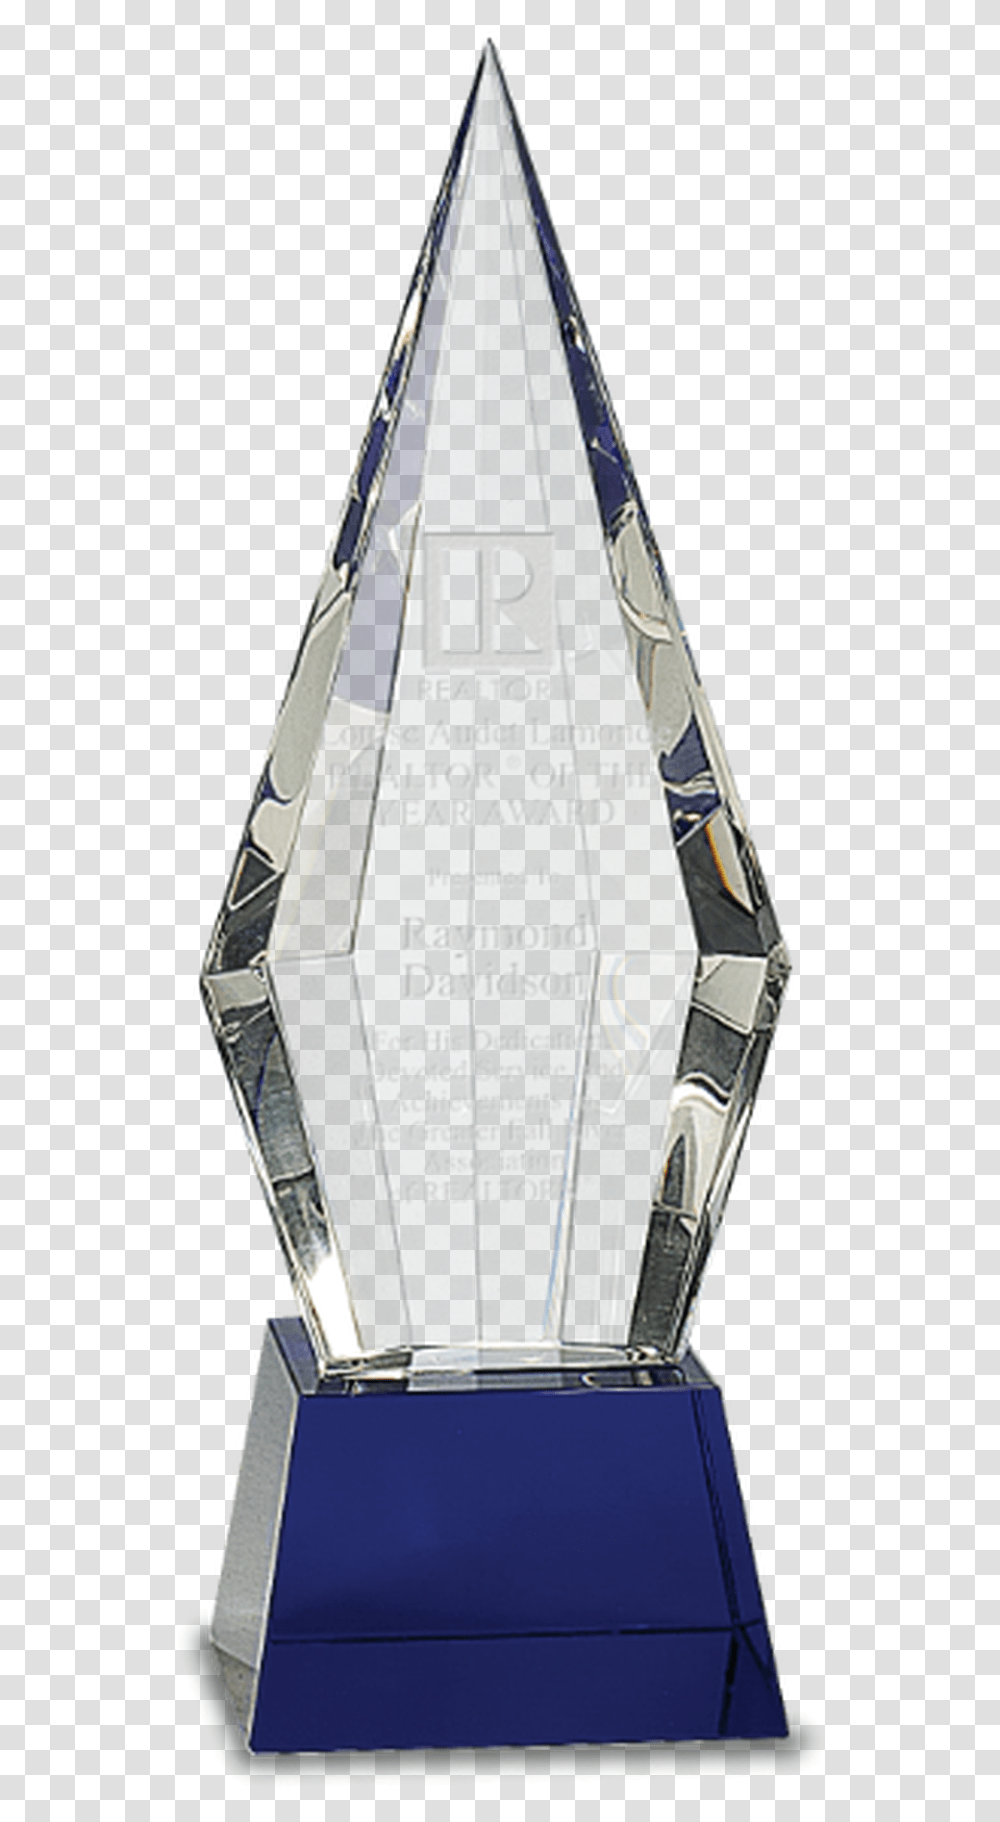 Crystal Faceted Obelisk On A Blue Crystal Base, Bottle, Cosmetics, Trophy Transparent Png